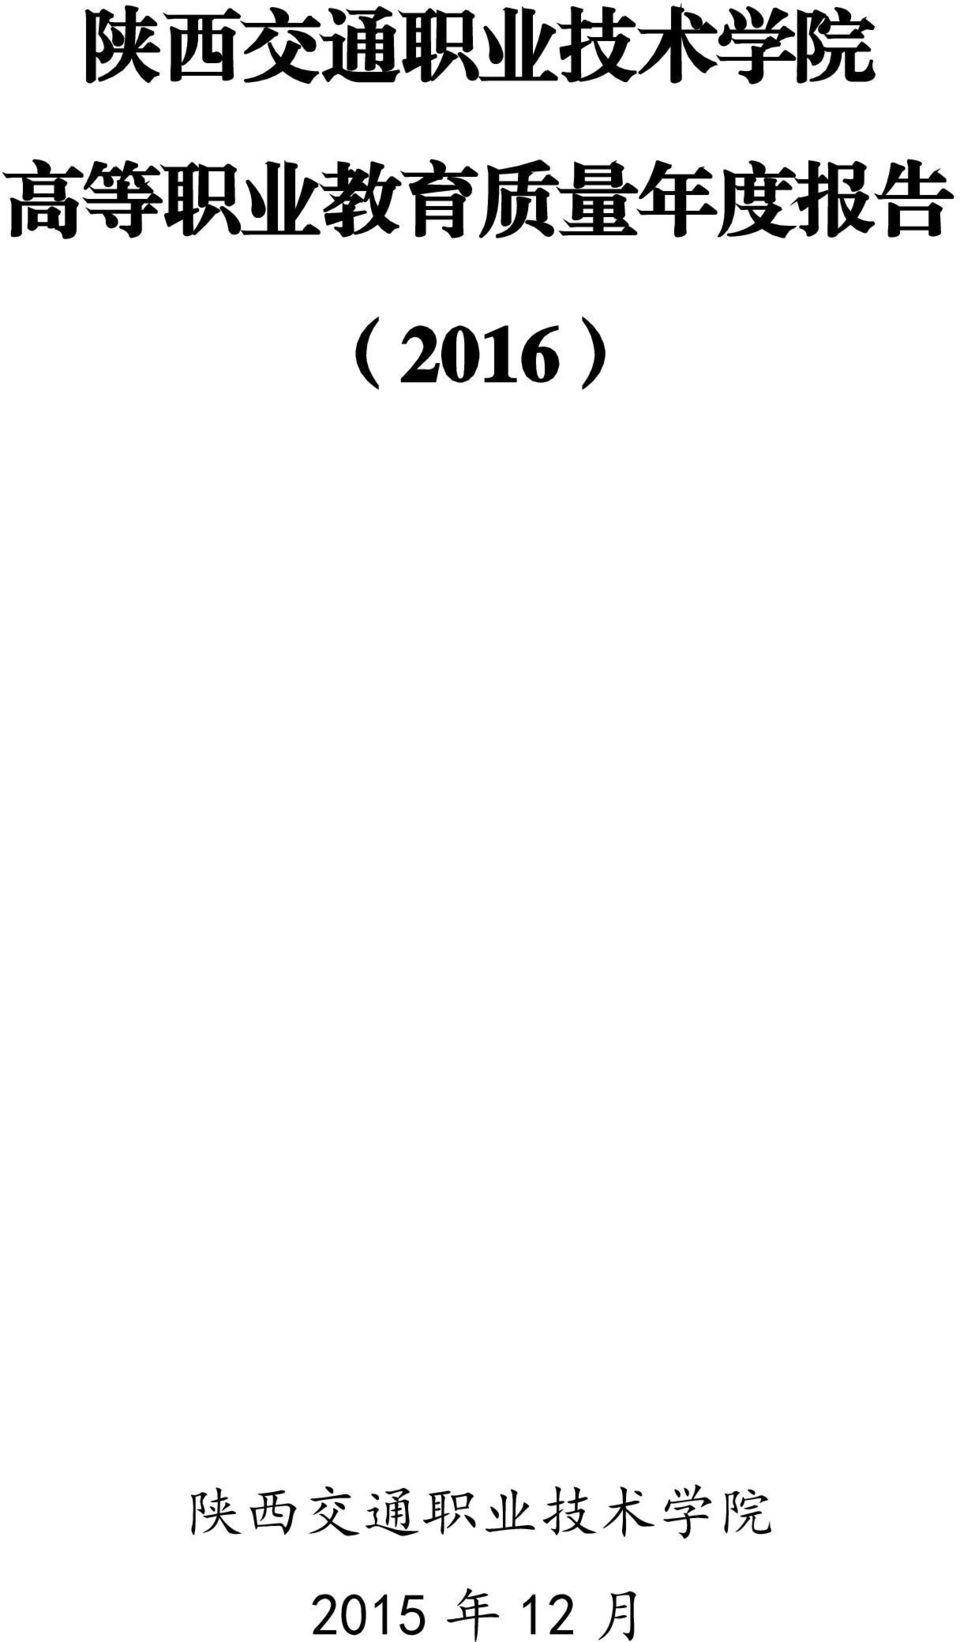 报 告 (2016)  2015 年